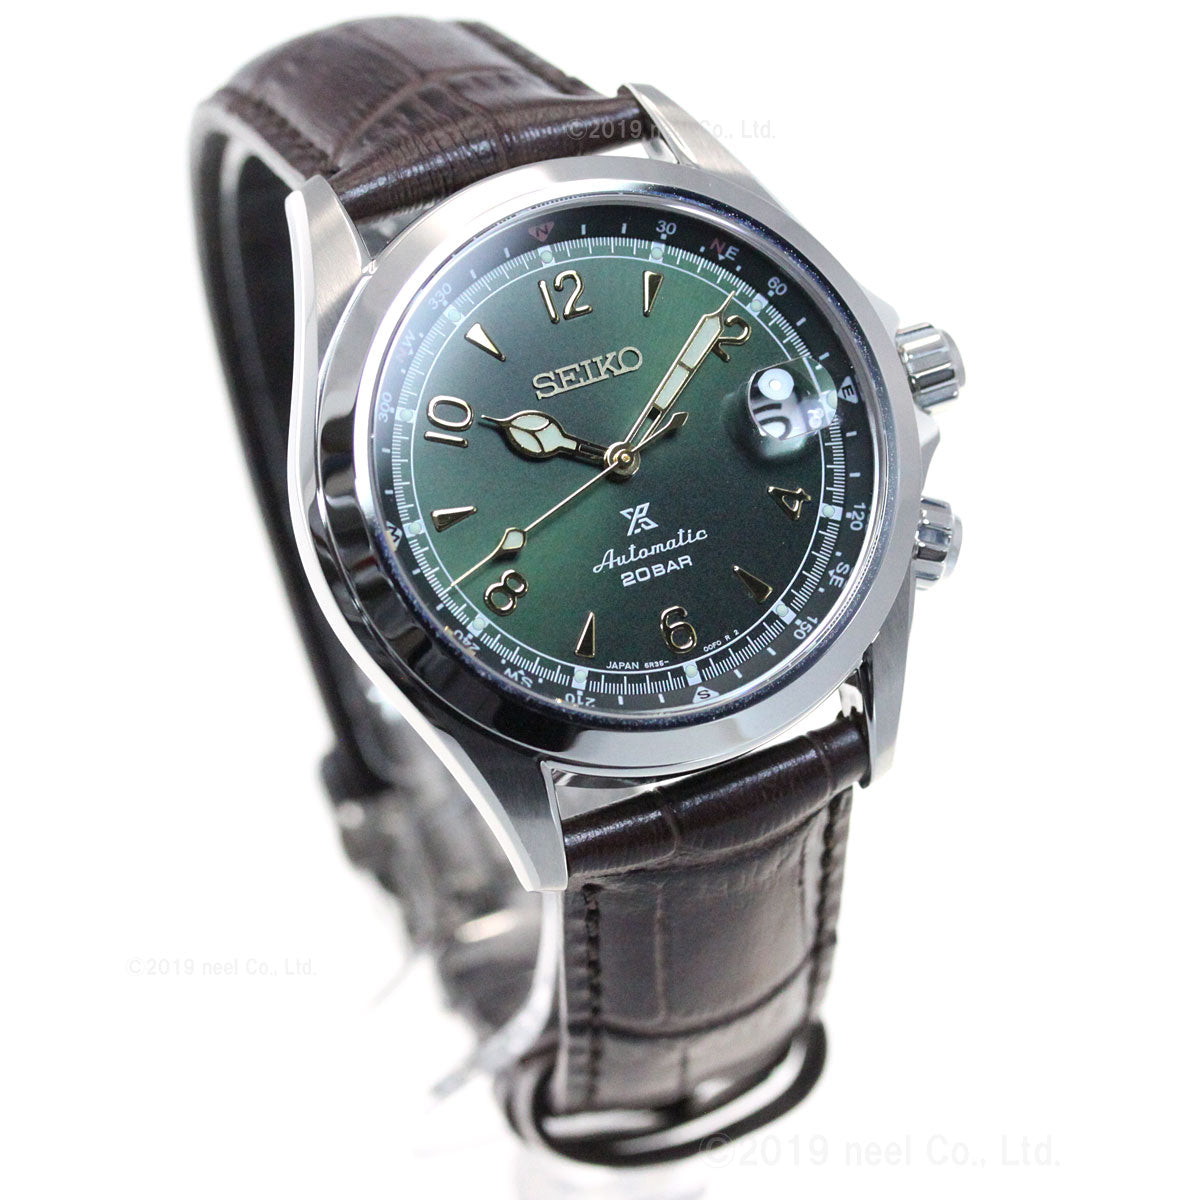 セイコー プロスペックス 自動巻き コアショップ専用 流通限定モデル 腕時計 メンズ アルピニスト SBDC091